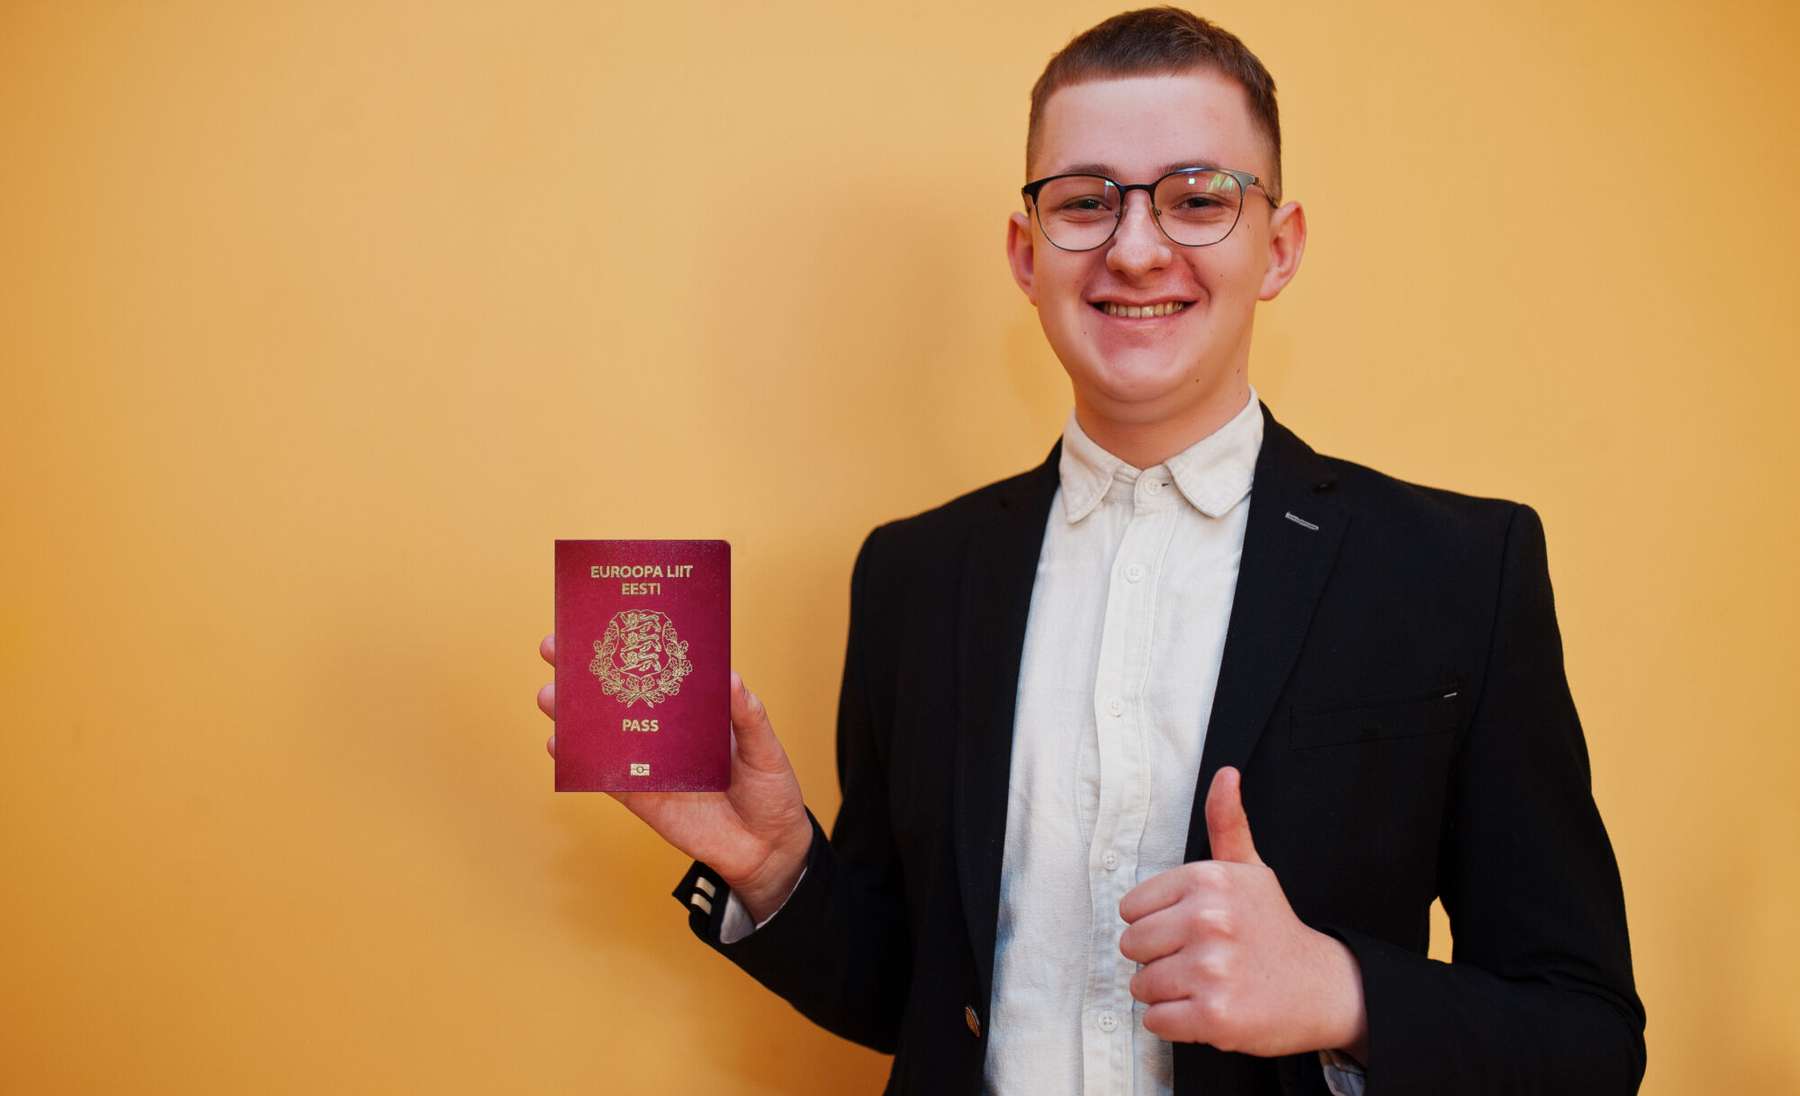 Noor mees Eesti passiga